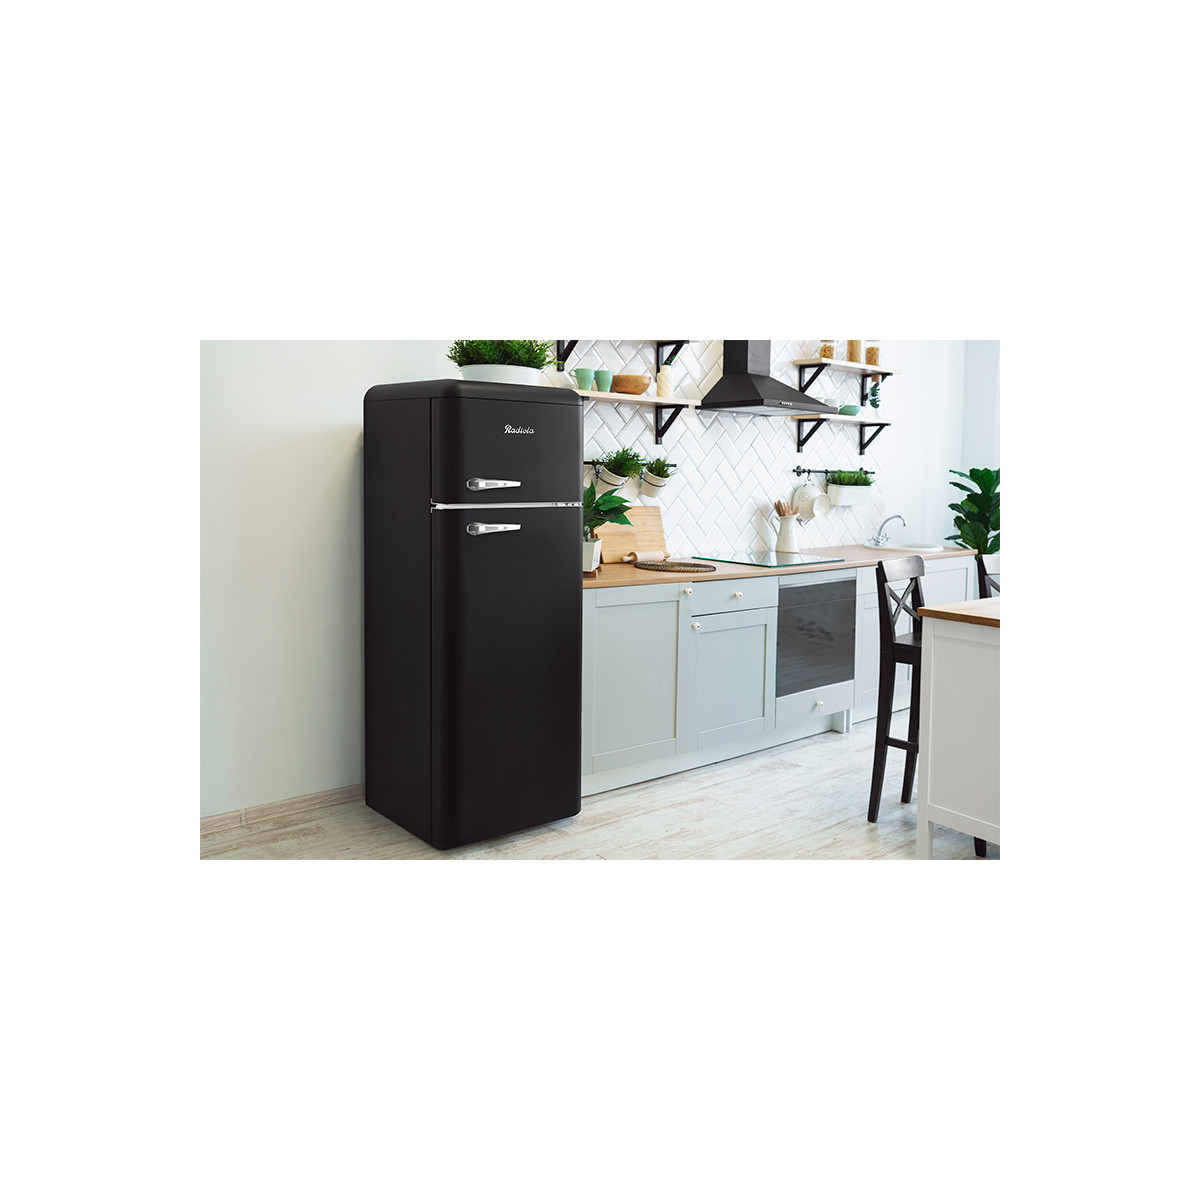 Refrigerateur congelateur en haut Radiola - RARDP210BV - Réfrigérateur 2  portes - 211 litres - Faible largeur - Classe F - Vintage - Froid statique  - Noir